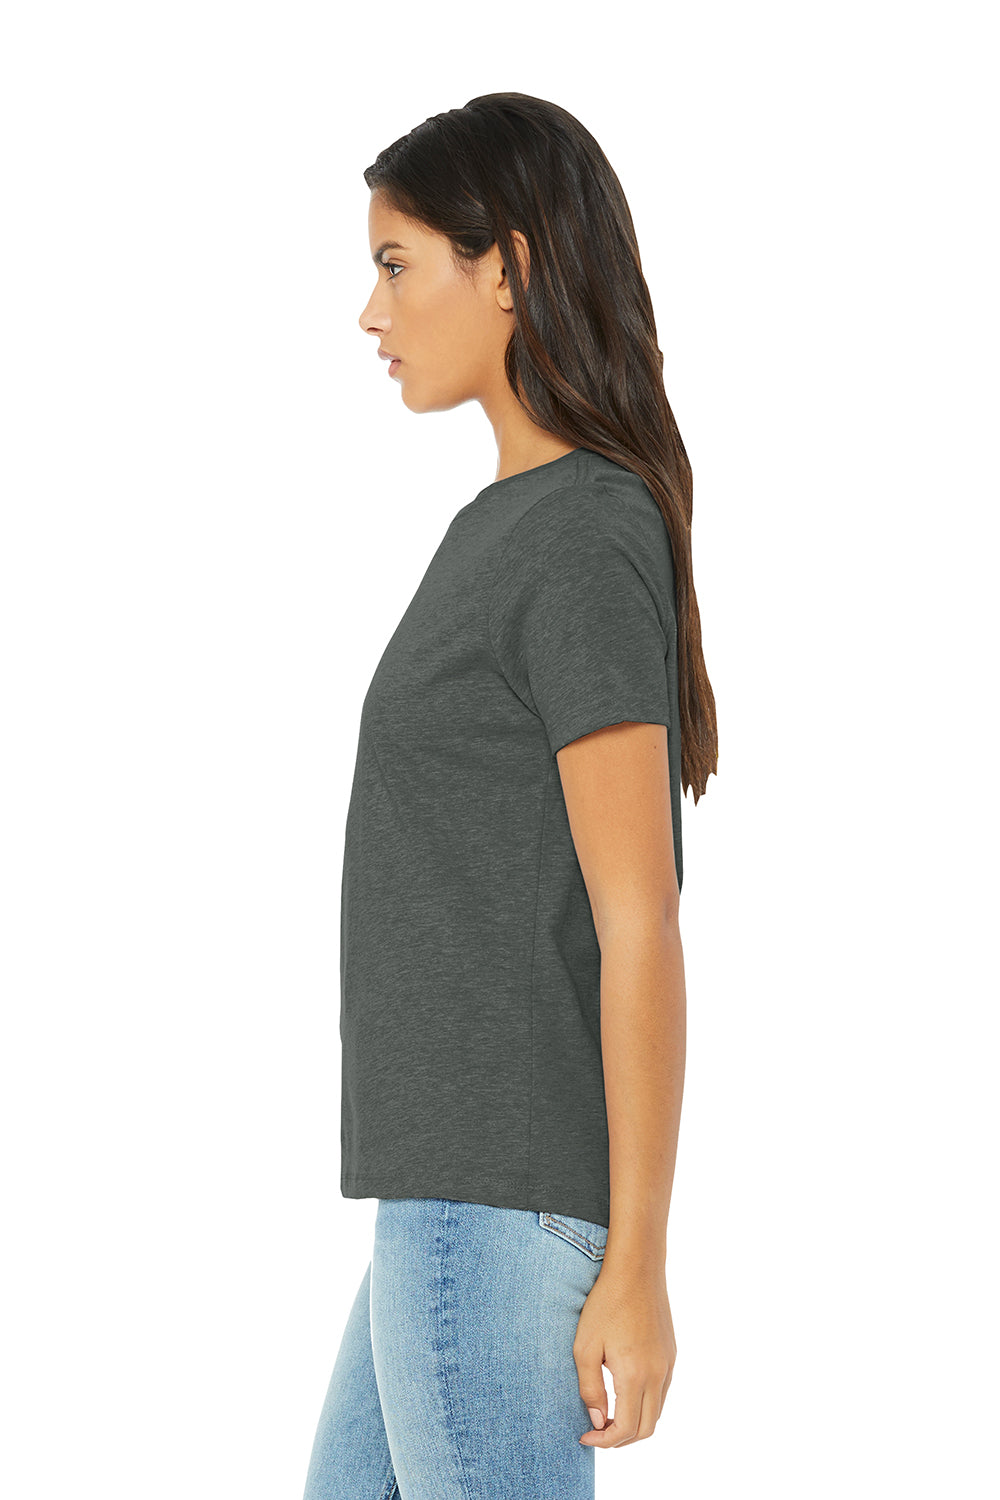 Bella + Canvas BC6400CVC/6400CVC Womens CVC Short Sleeve Crewneck T-Shirt Heather Deep Grey Model Side